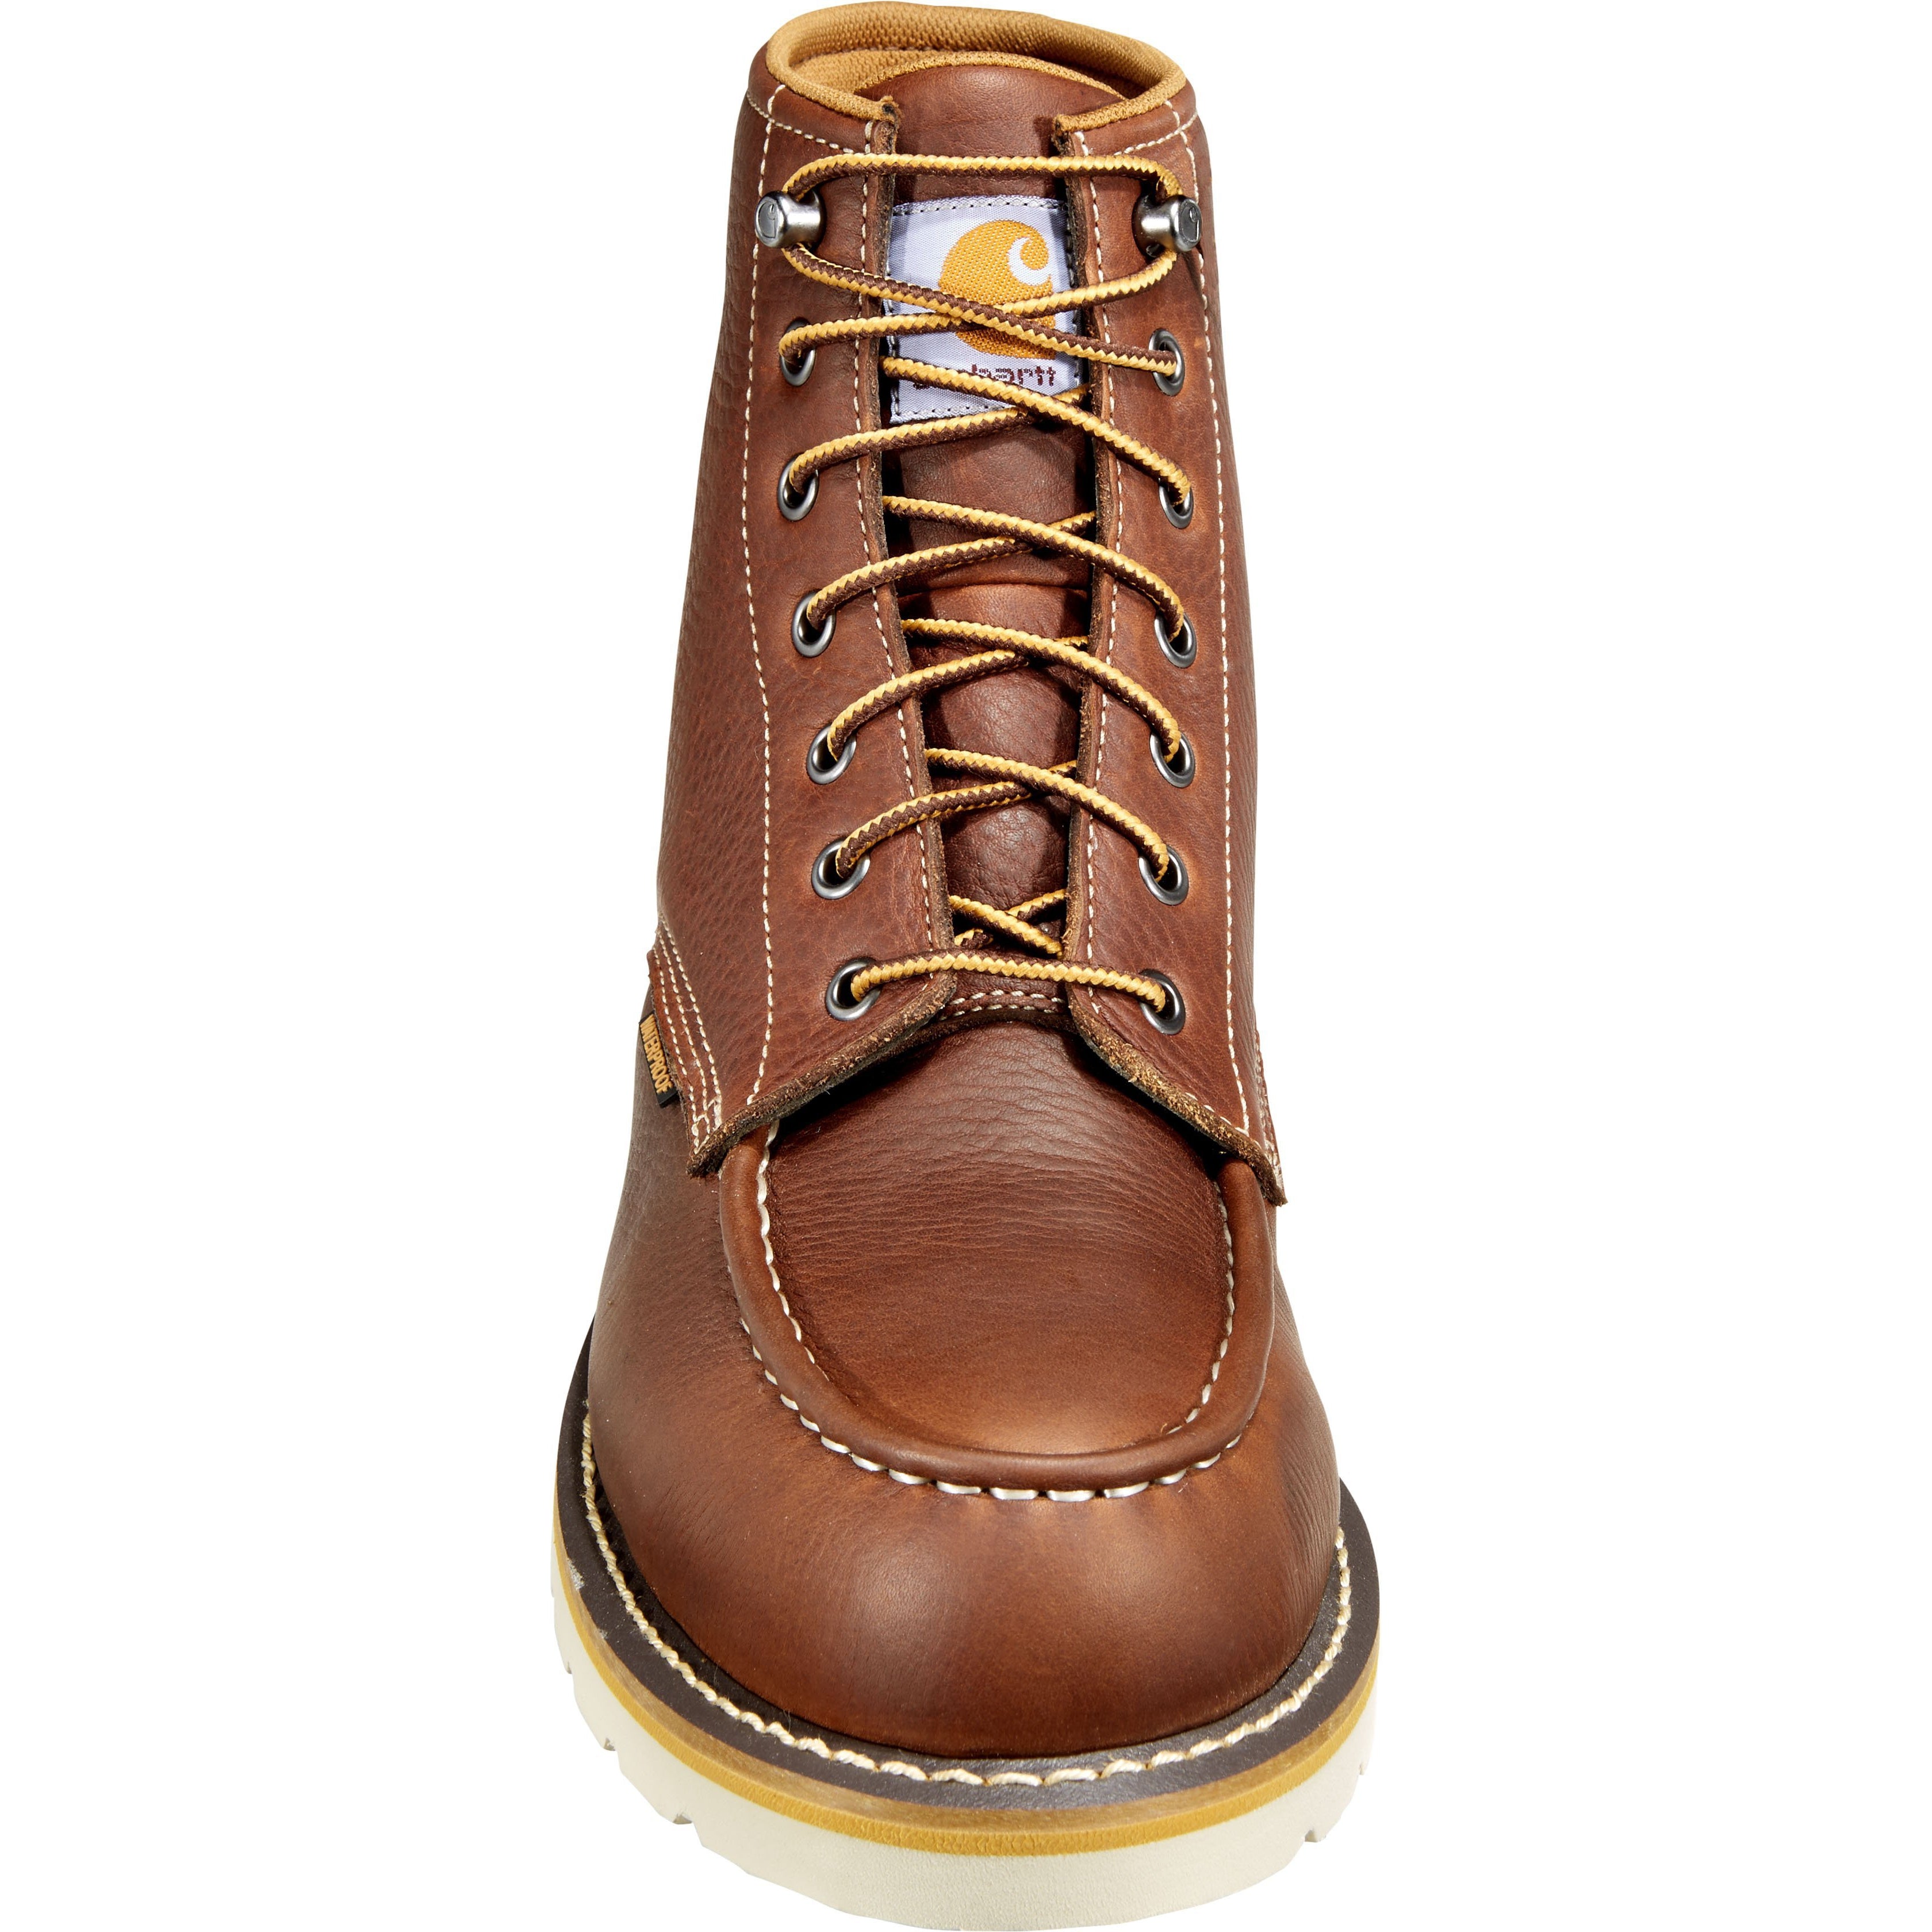 Carhartt Men's 6" Soft Toe Waterproof Wedge Work Boot - Tan - CMW6175  - Overlook Boots